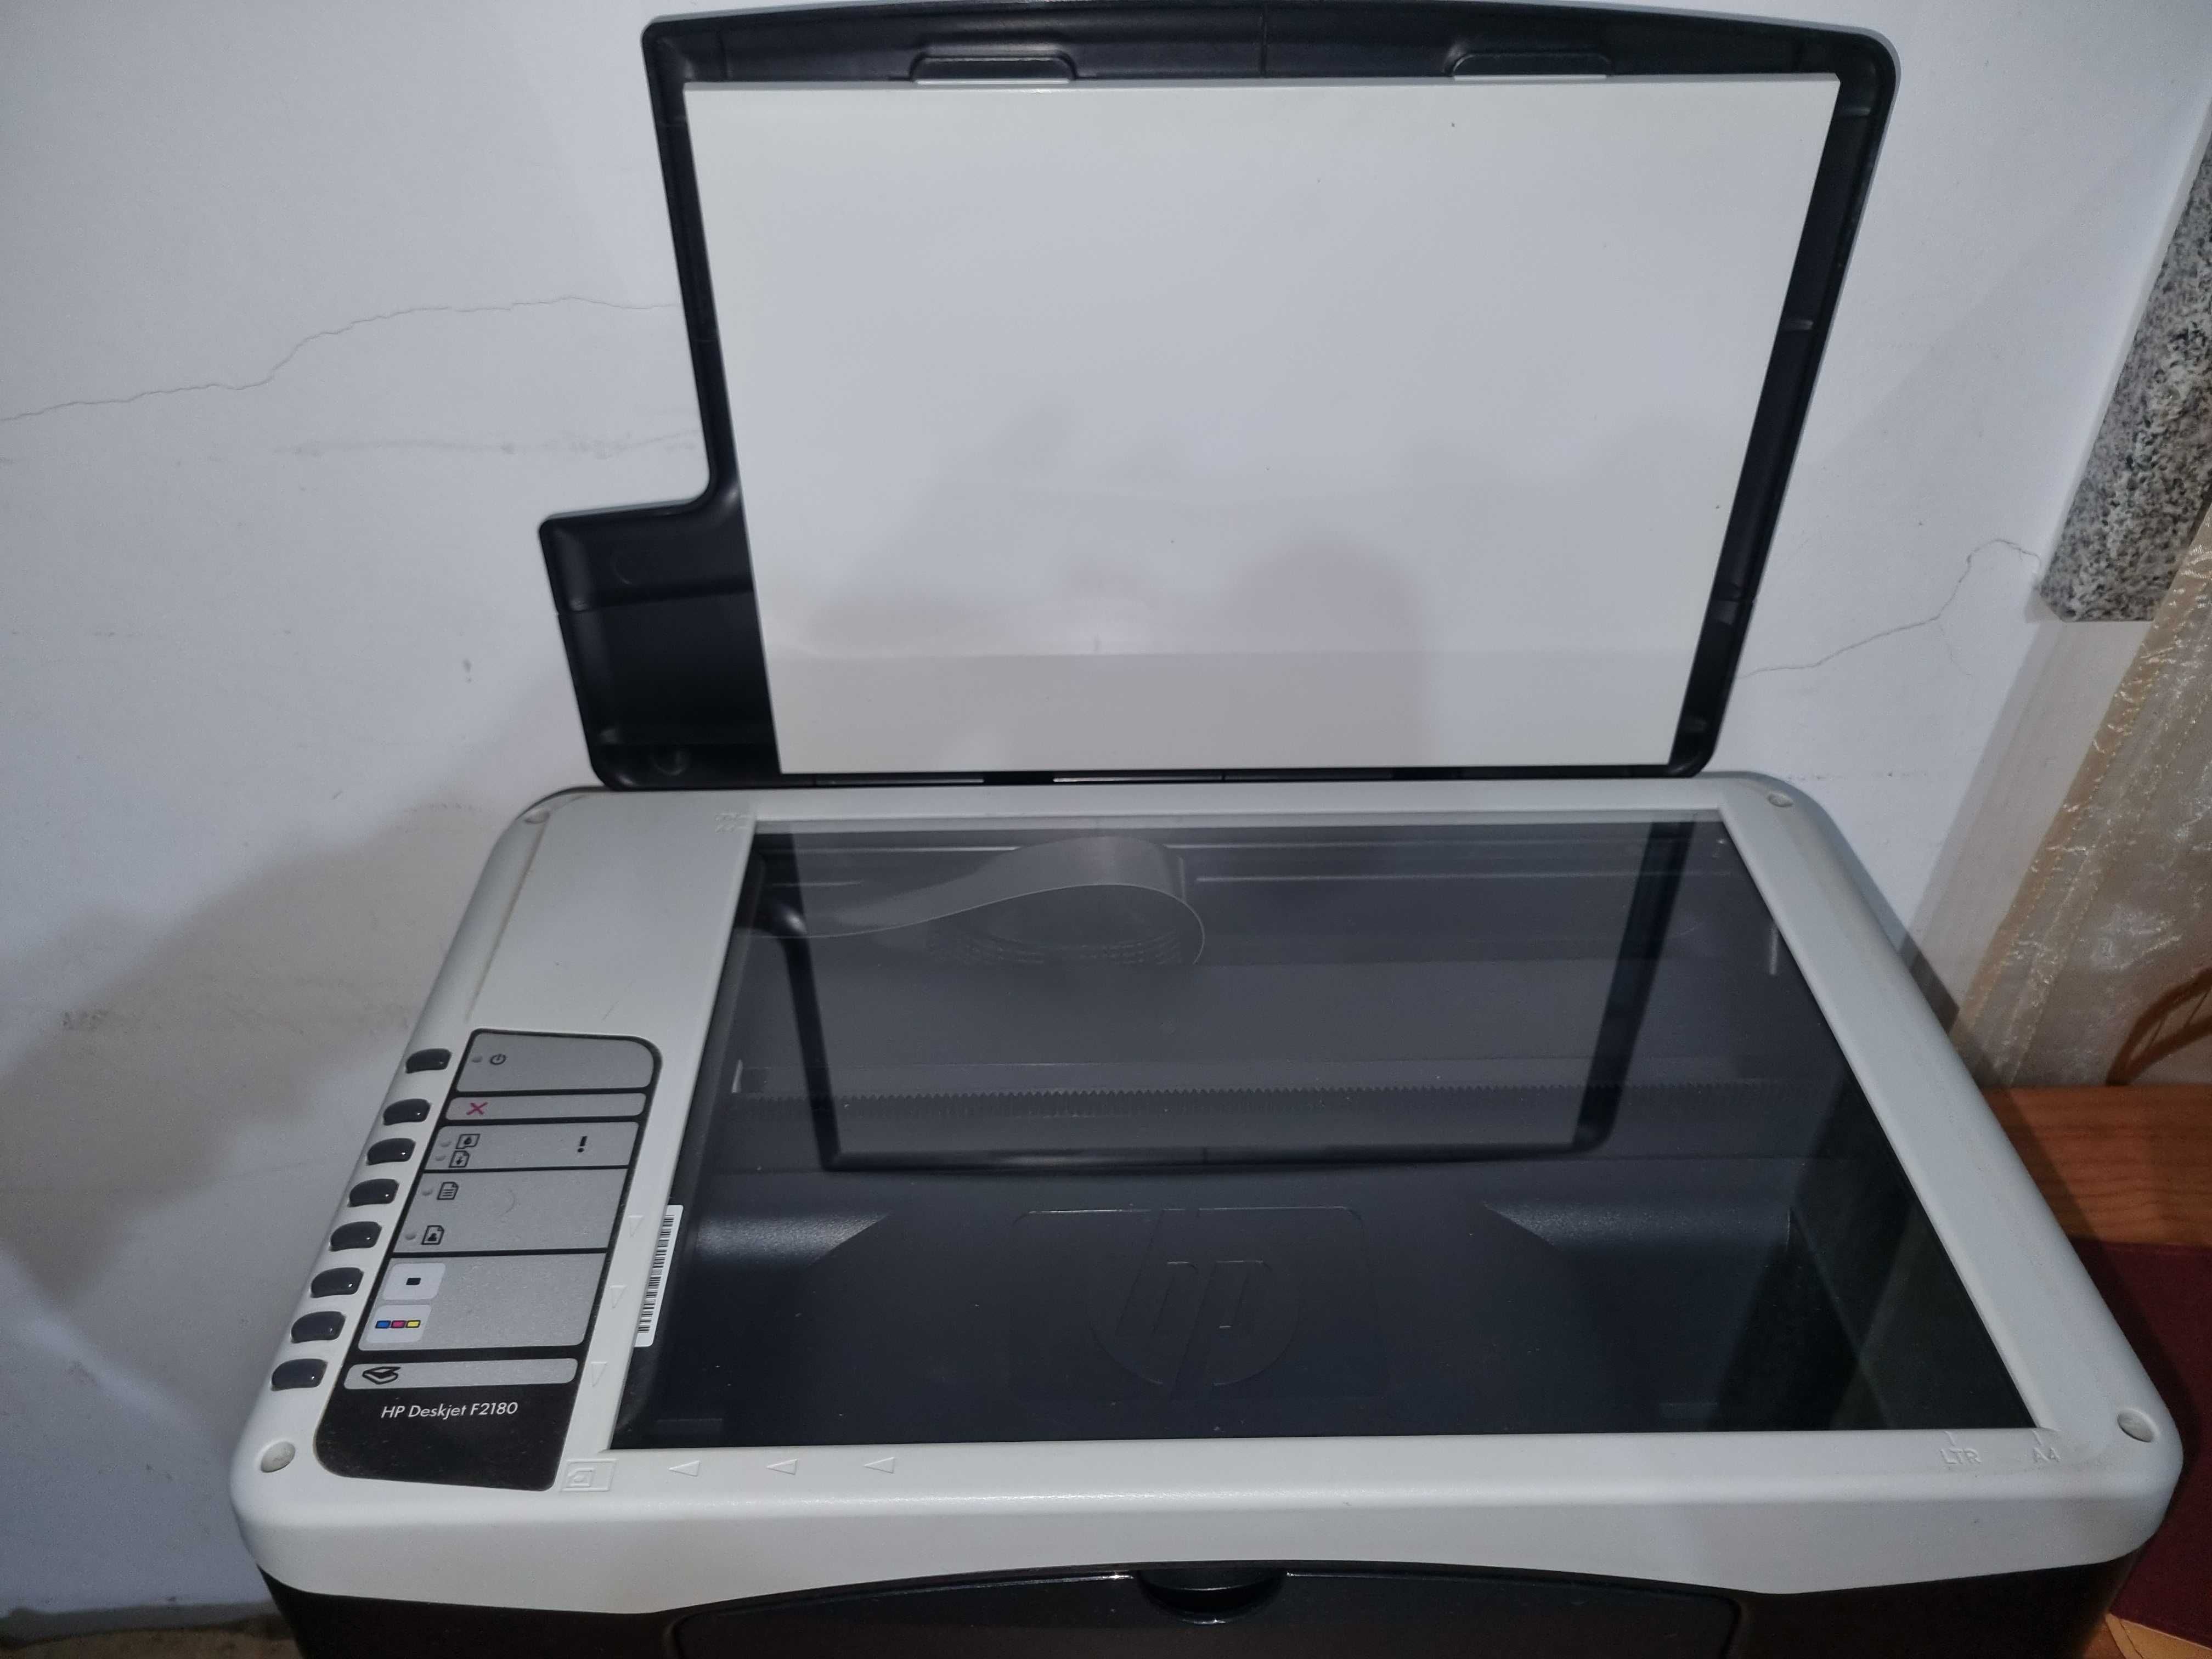 Impressora HP Deskjet F2180